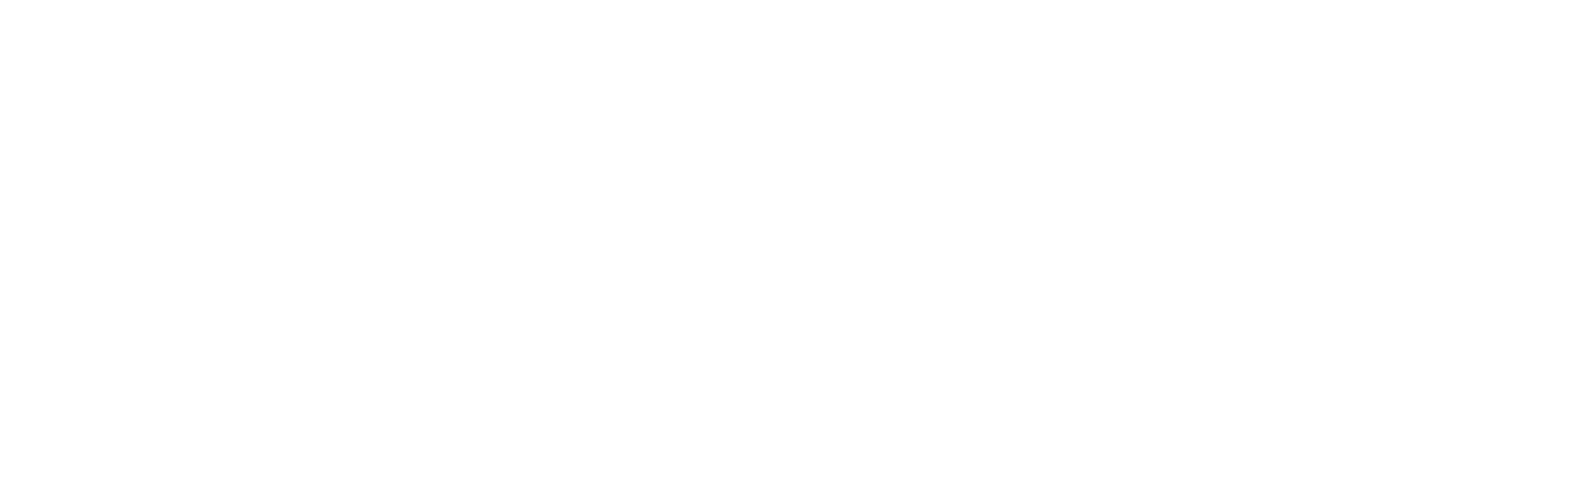 1stdibs.Com logo large for dark backgrounds (transparent PNG)